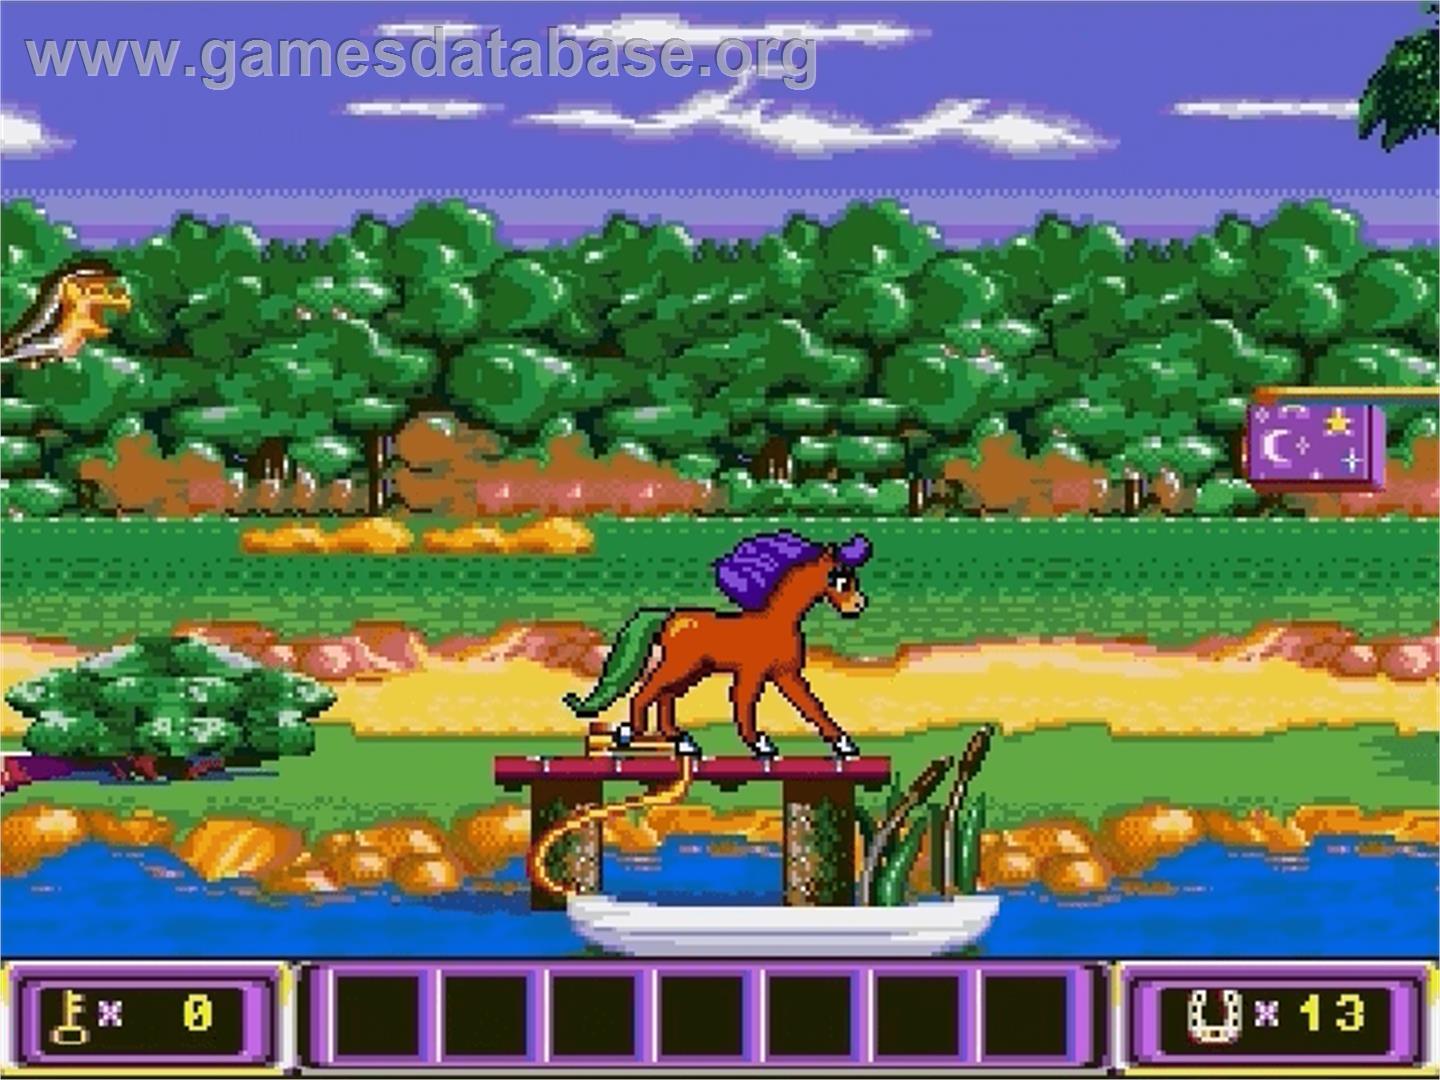 Crystal's Pony Tale - Sega Genesis - Artwork - In Game